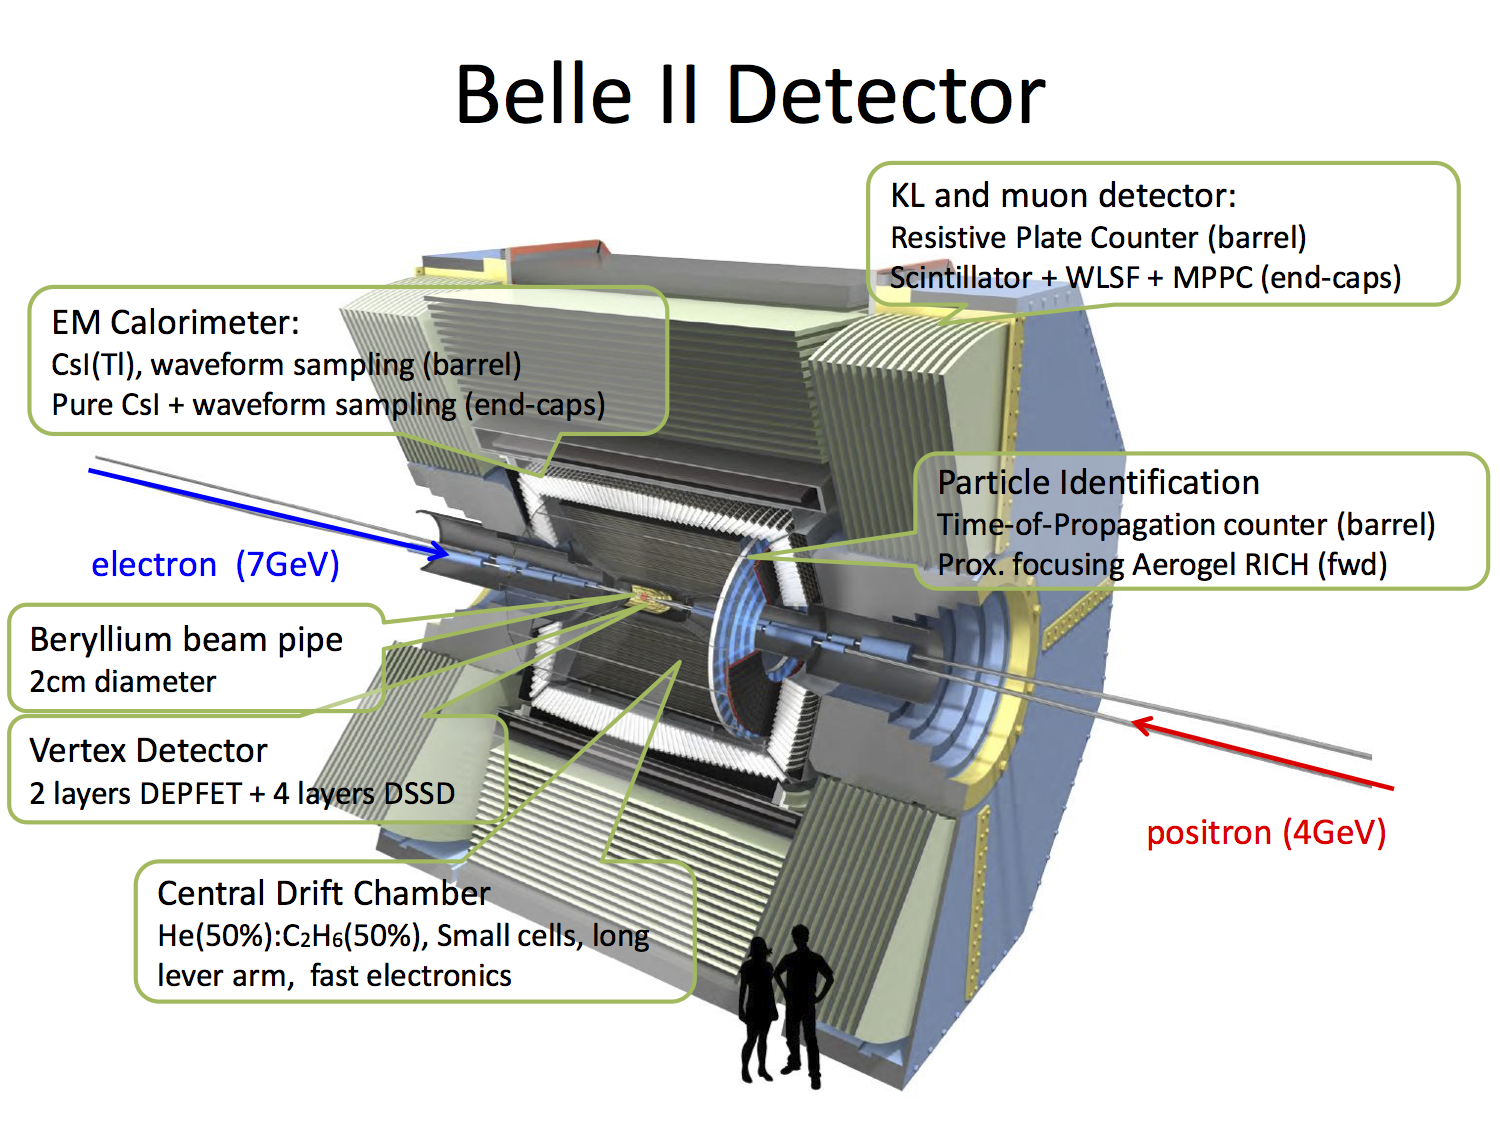 BelleII-Detector